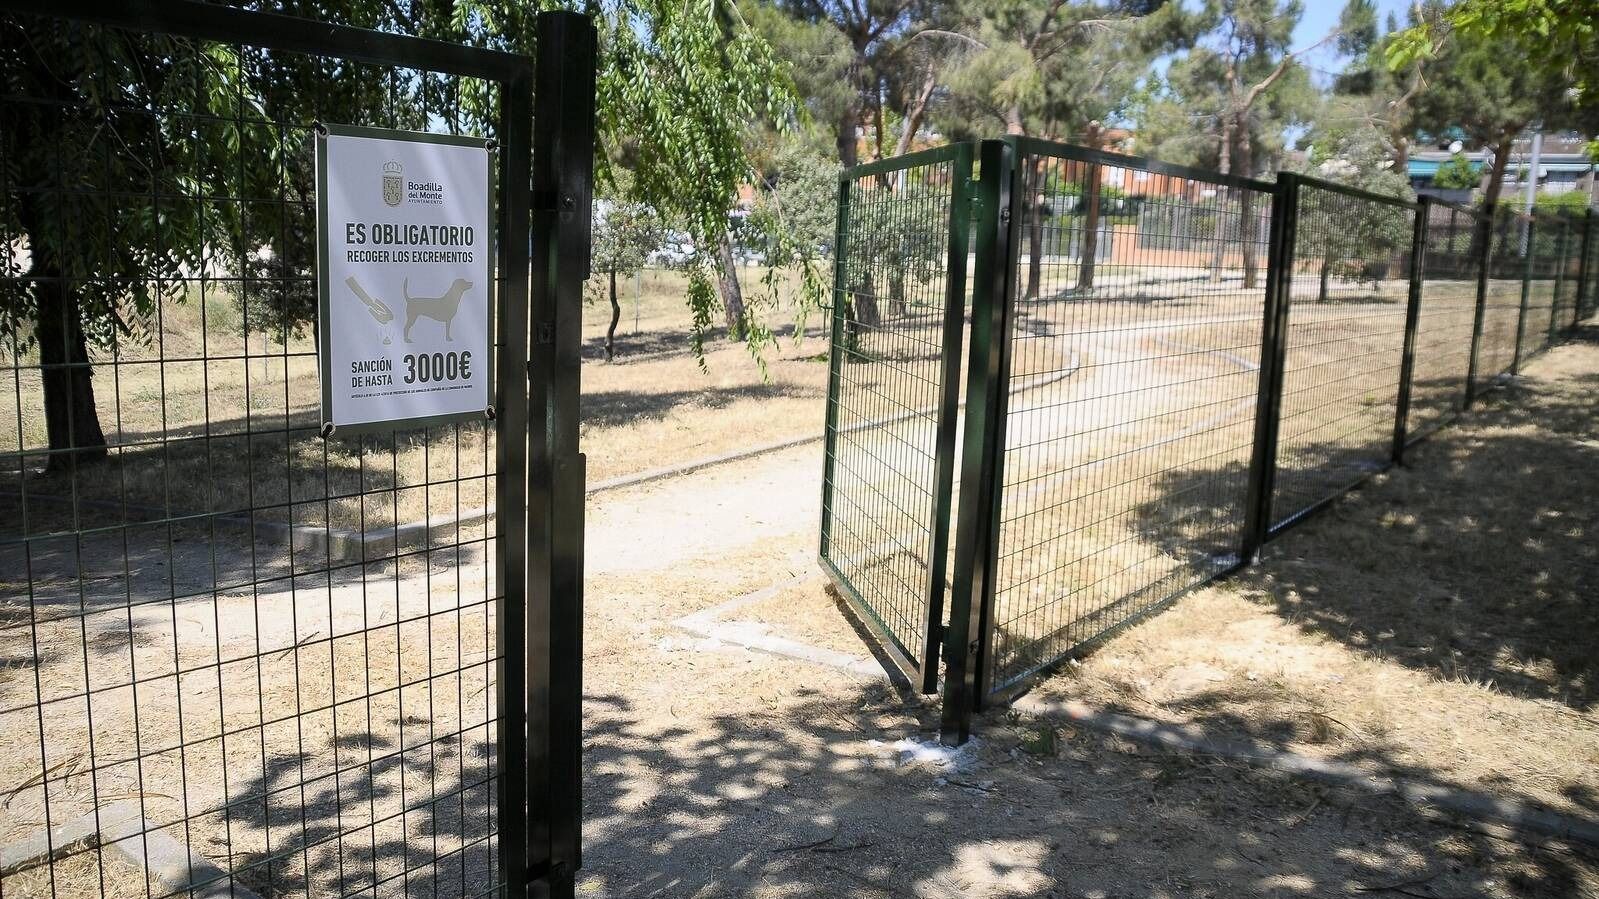 Ampliada la superficie del área canina del parque Juan Pablo II hasta los 2000 metros cuadrados